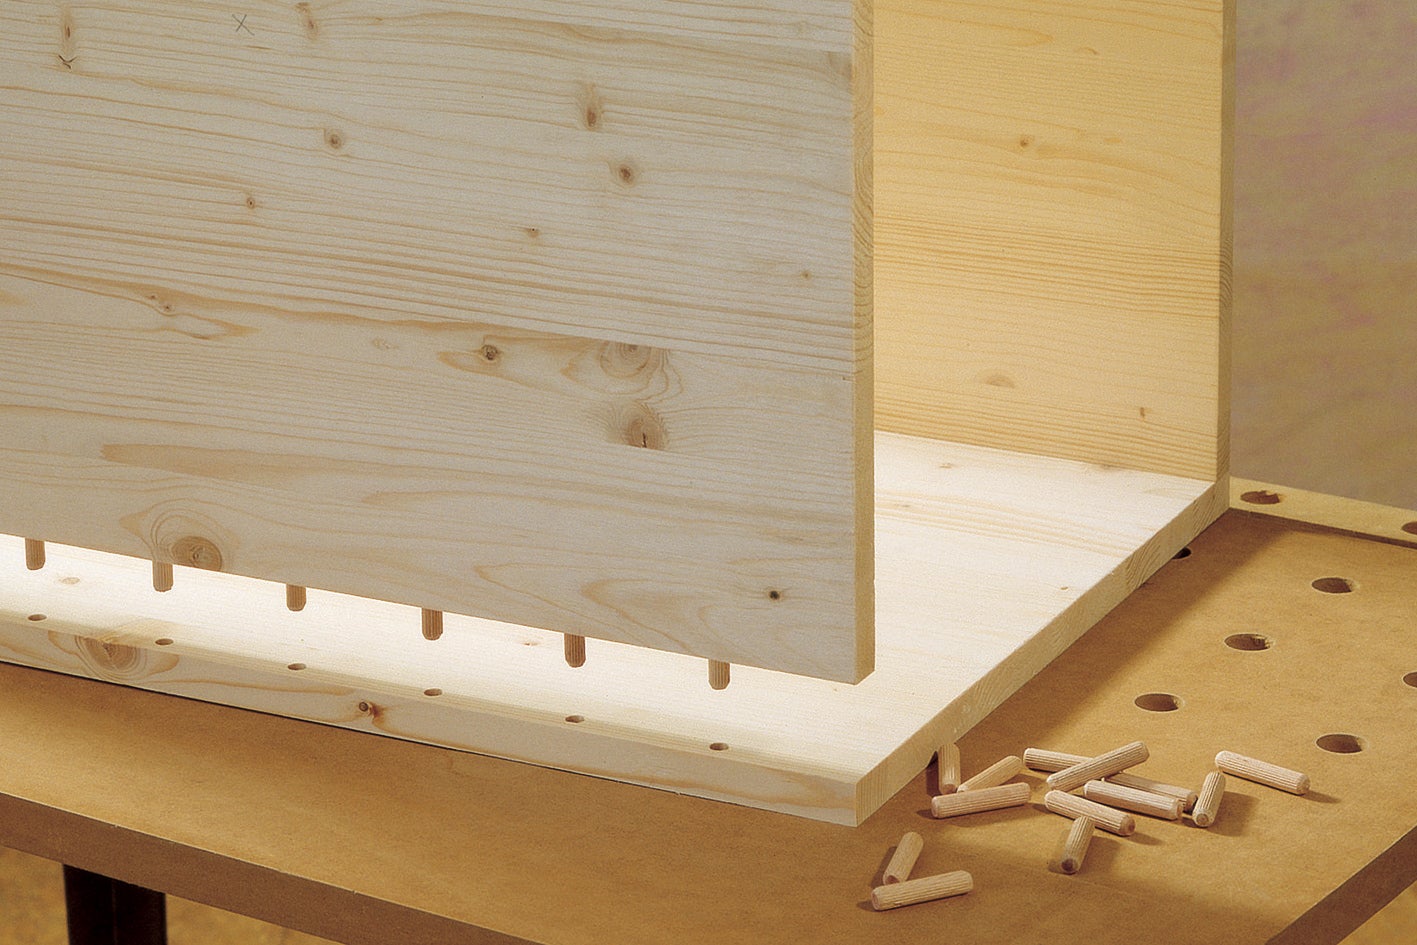 Cómo pegar madera: selecciona el producto adecuado para tu proyecto